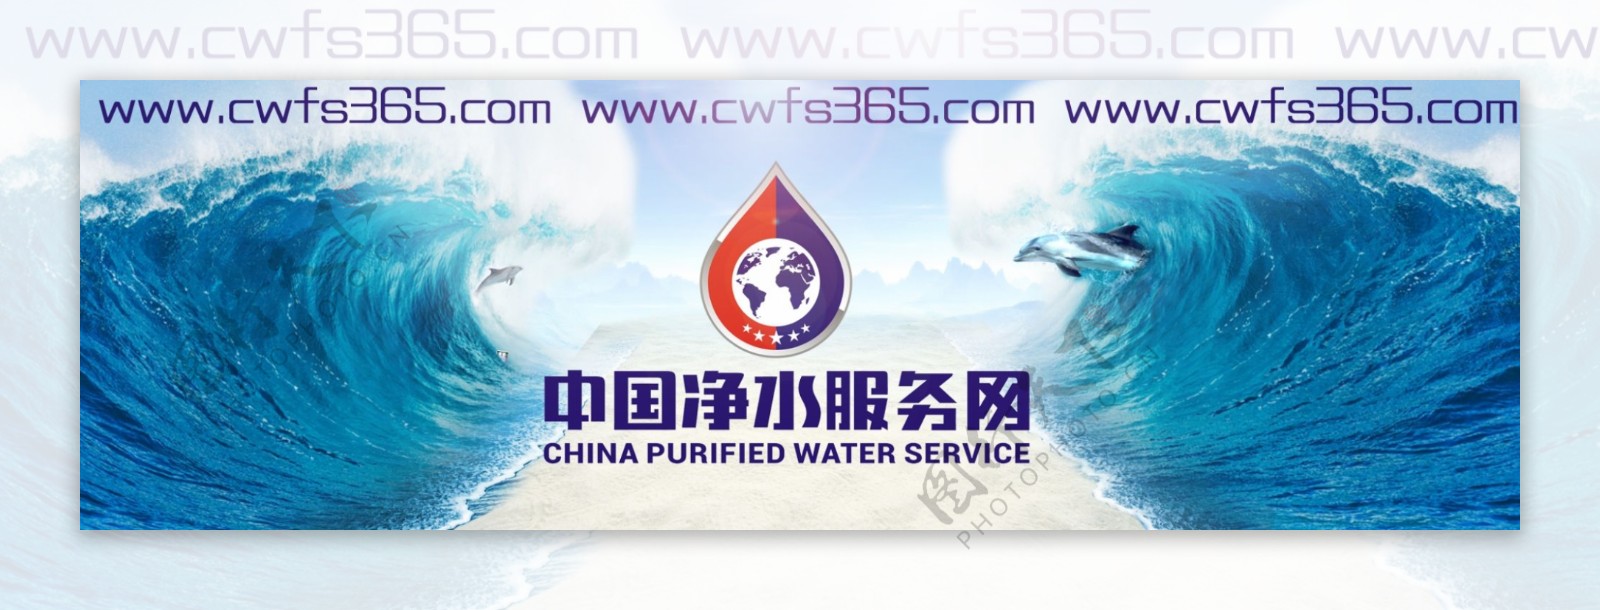 海洋风中国净水服务网震撼宣传海报